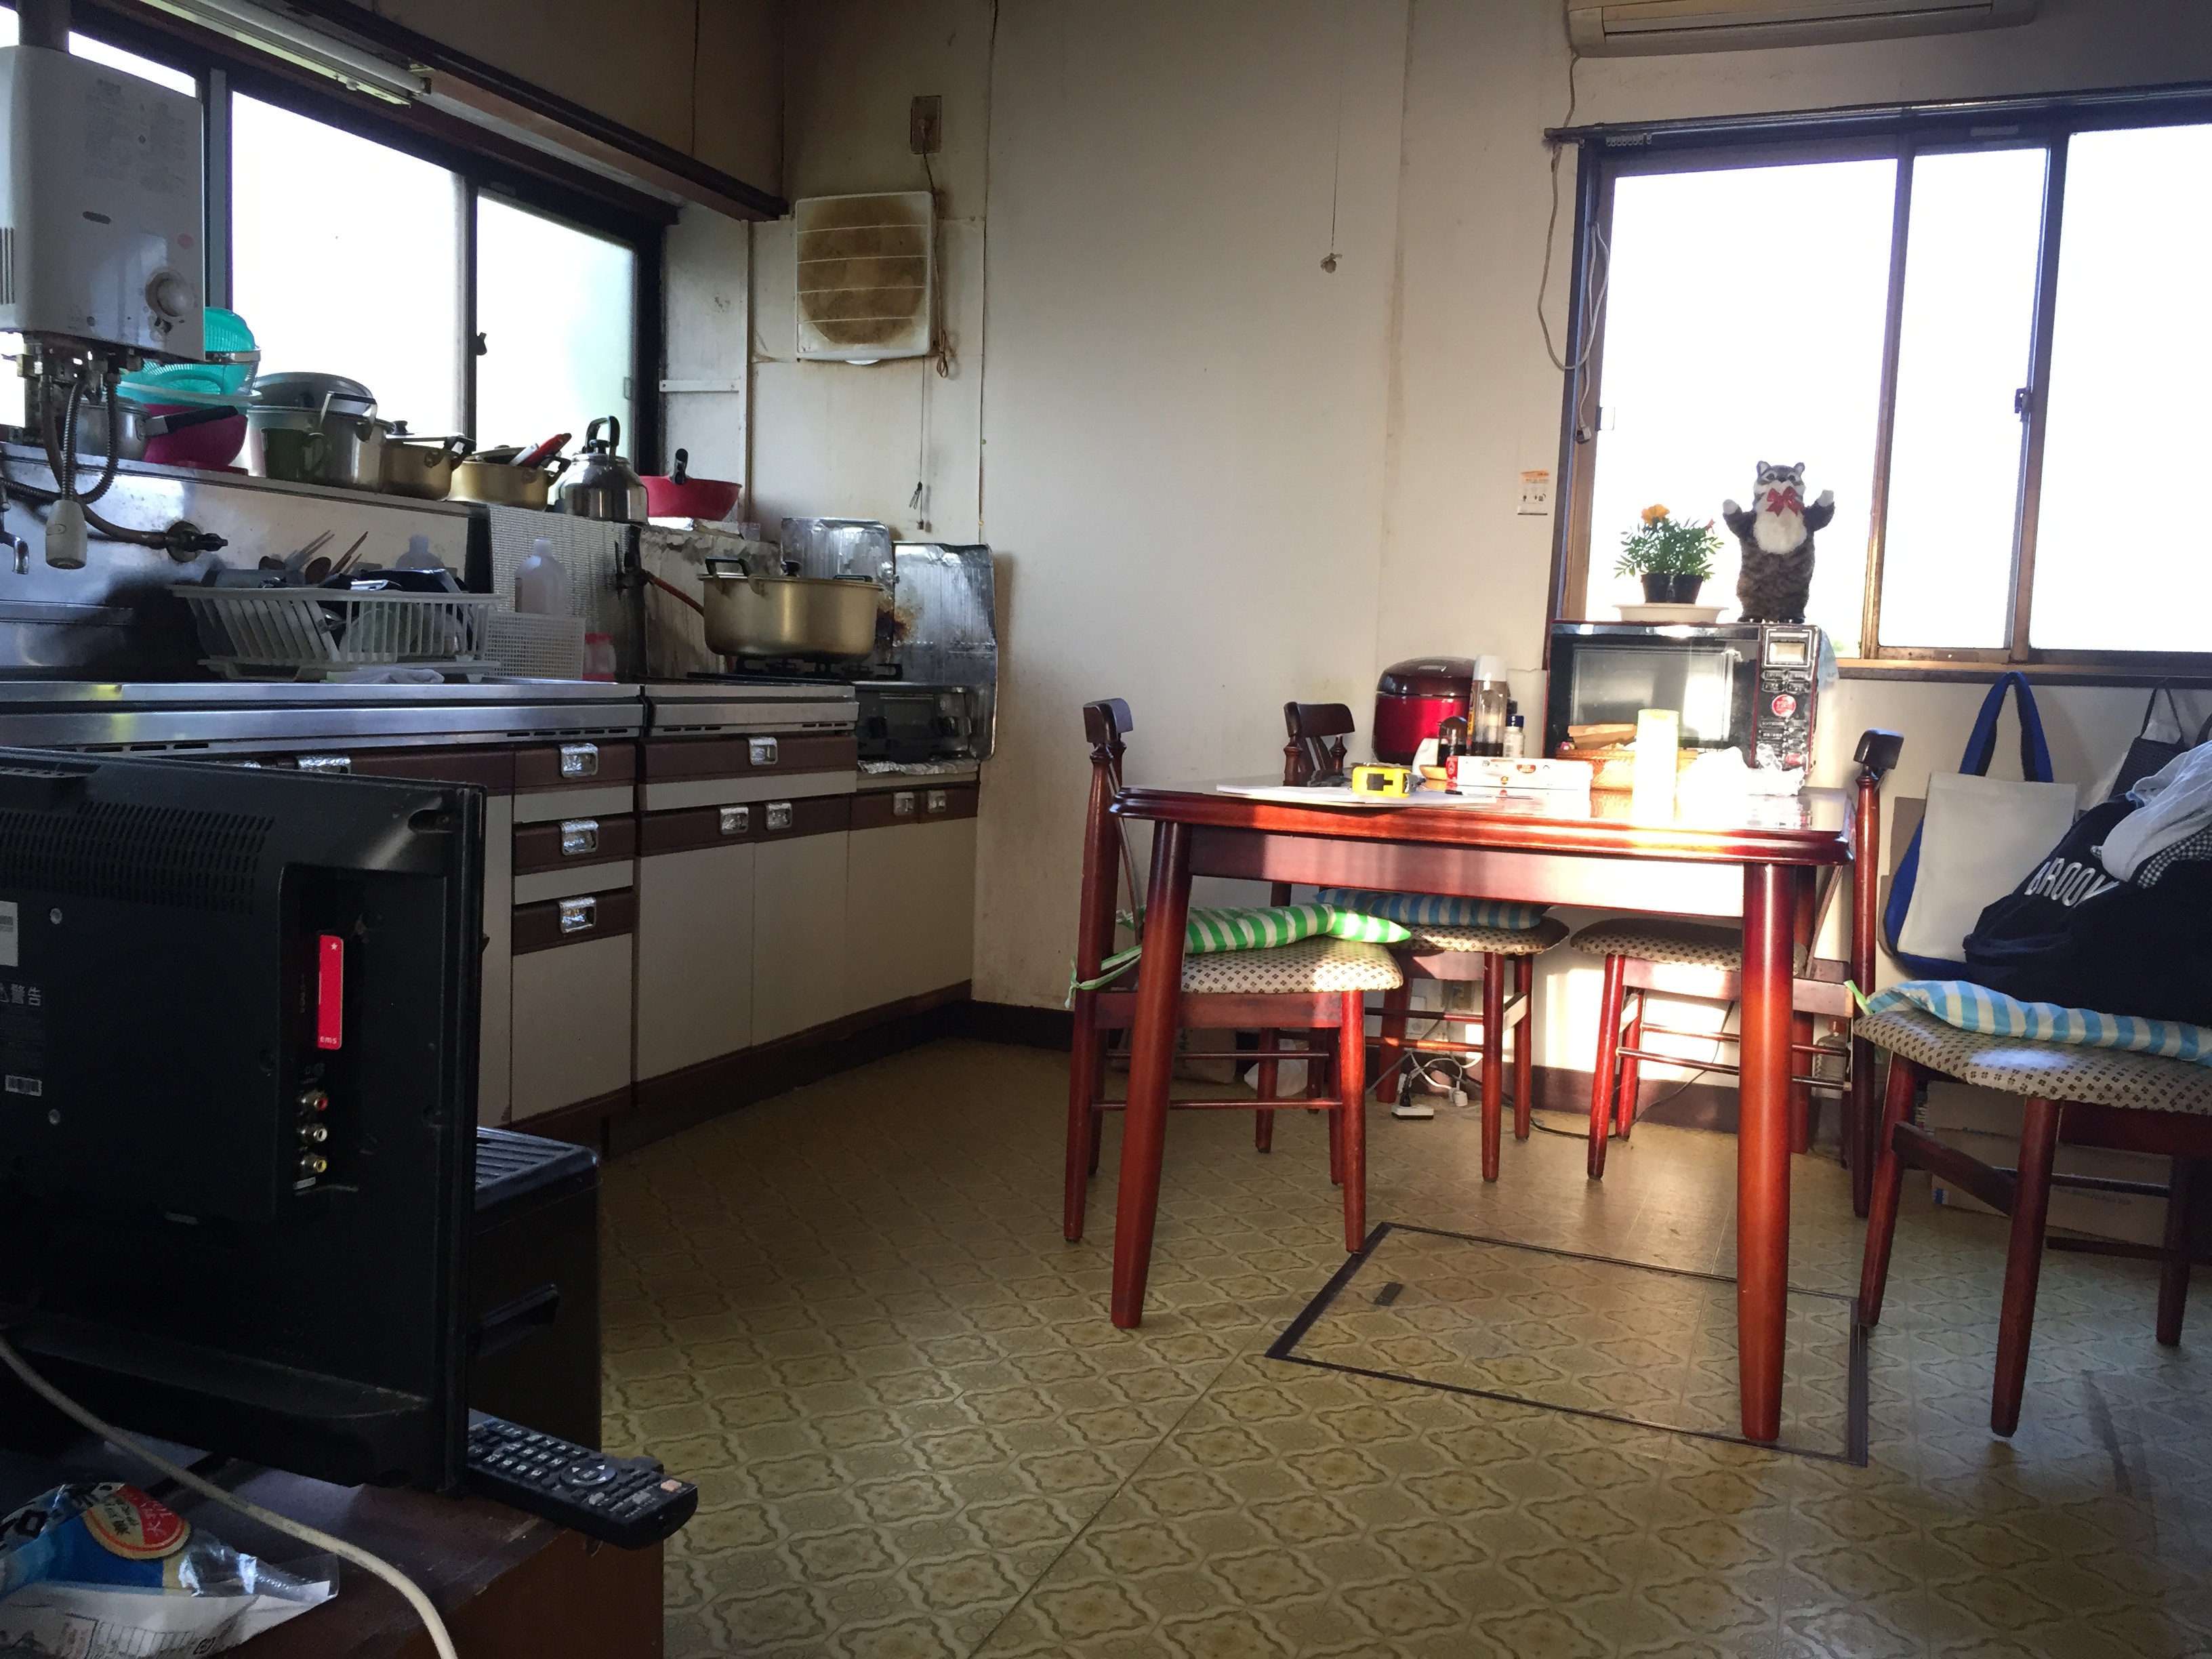 福島県会津若松市の住宅で、タカラスタンダード製のお風呂と台所に交換した水回りリフォーム事例